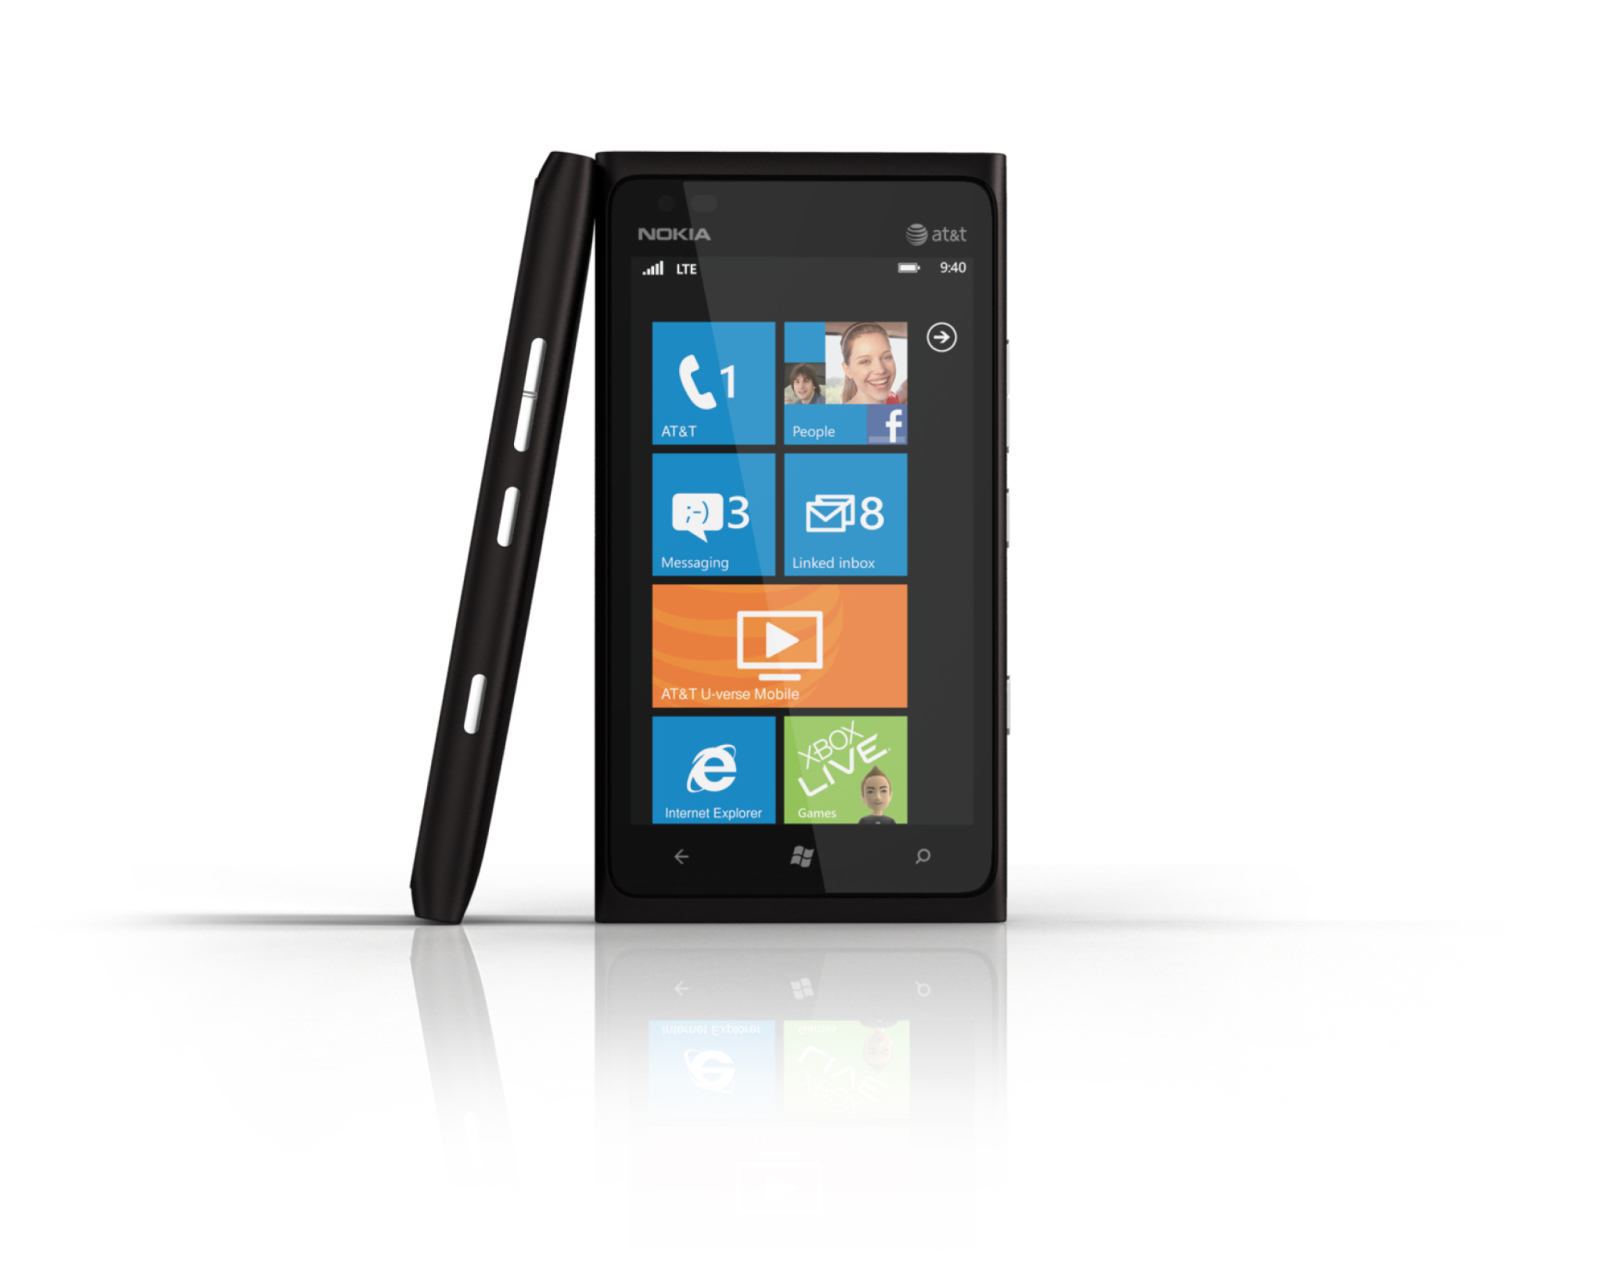 Das Windows Phone Nokia Lumia 900 Wallpaper 1600x1280